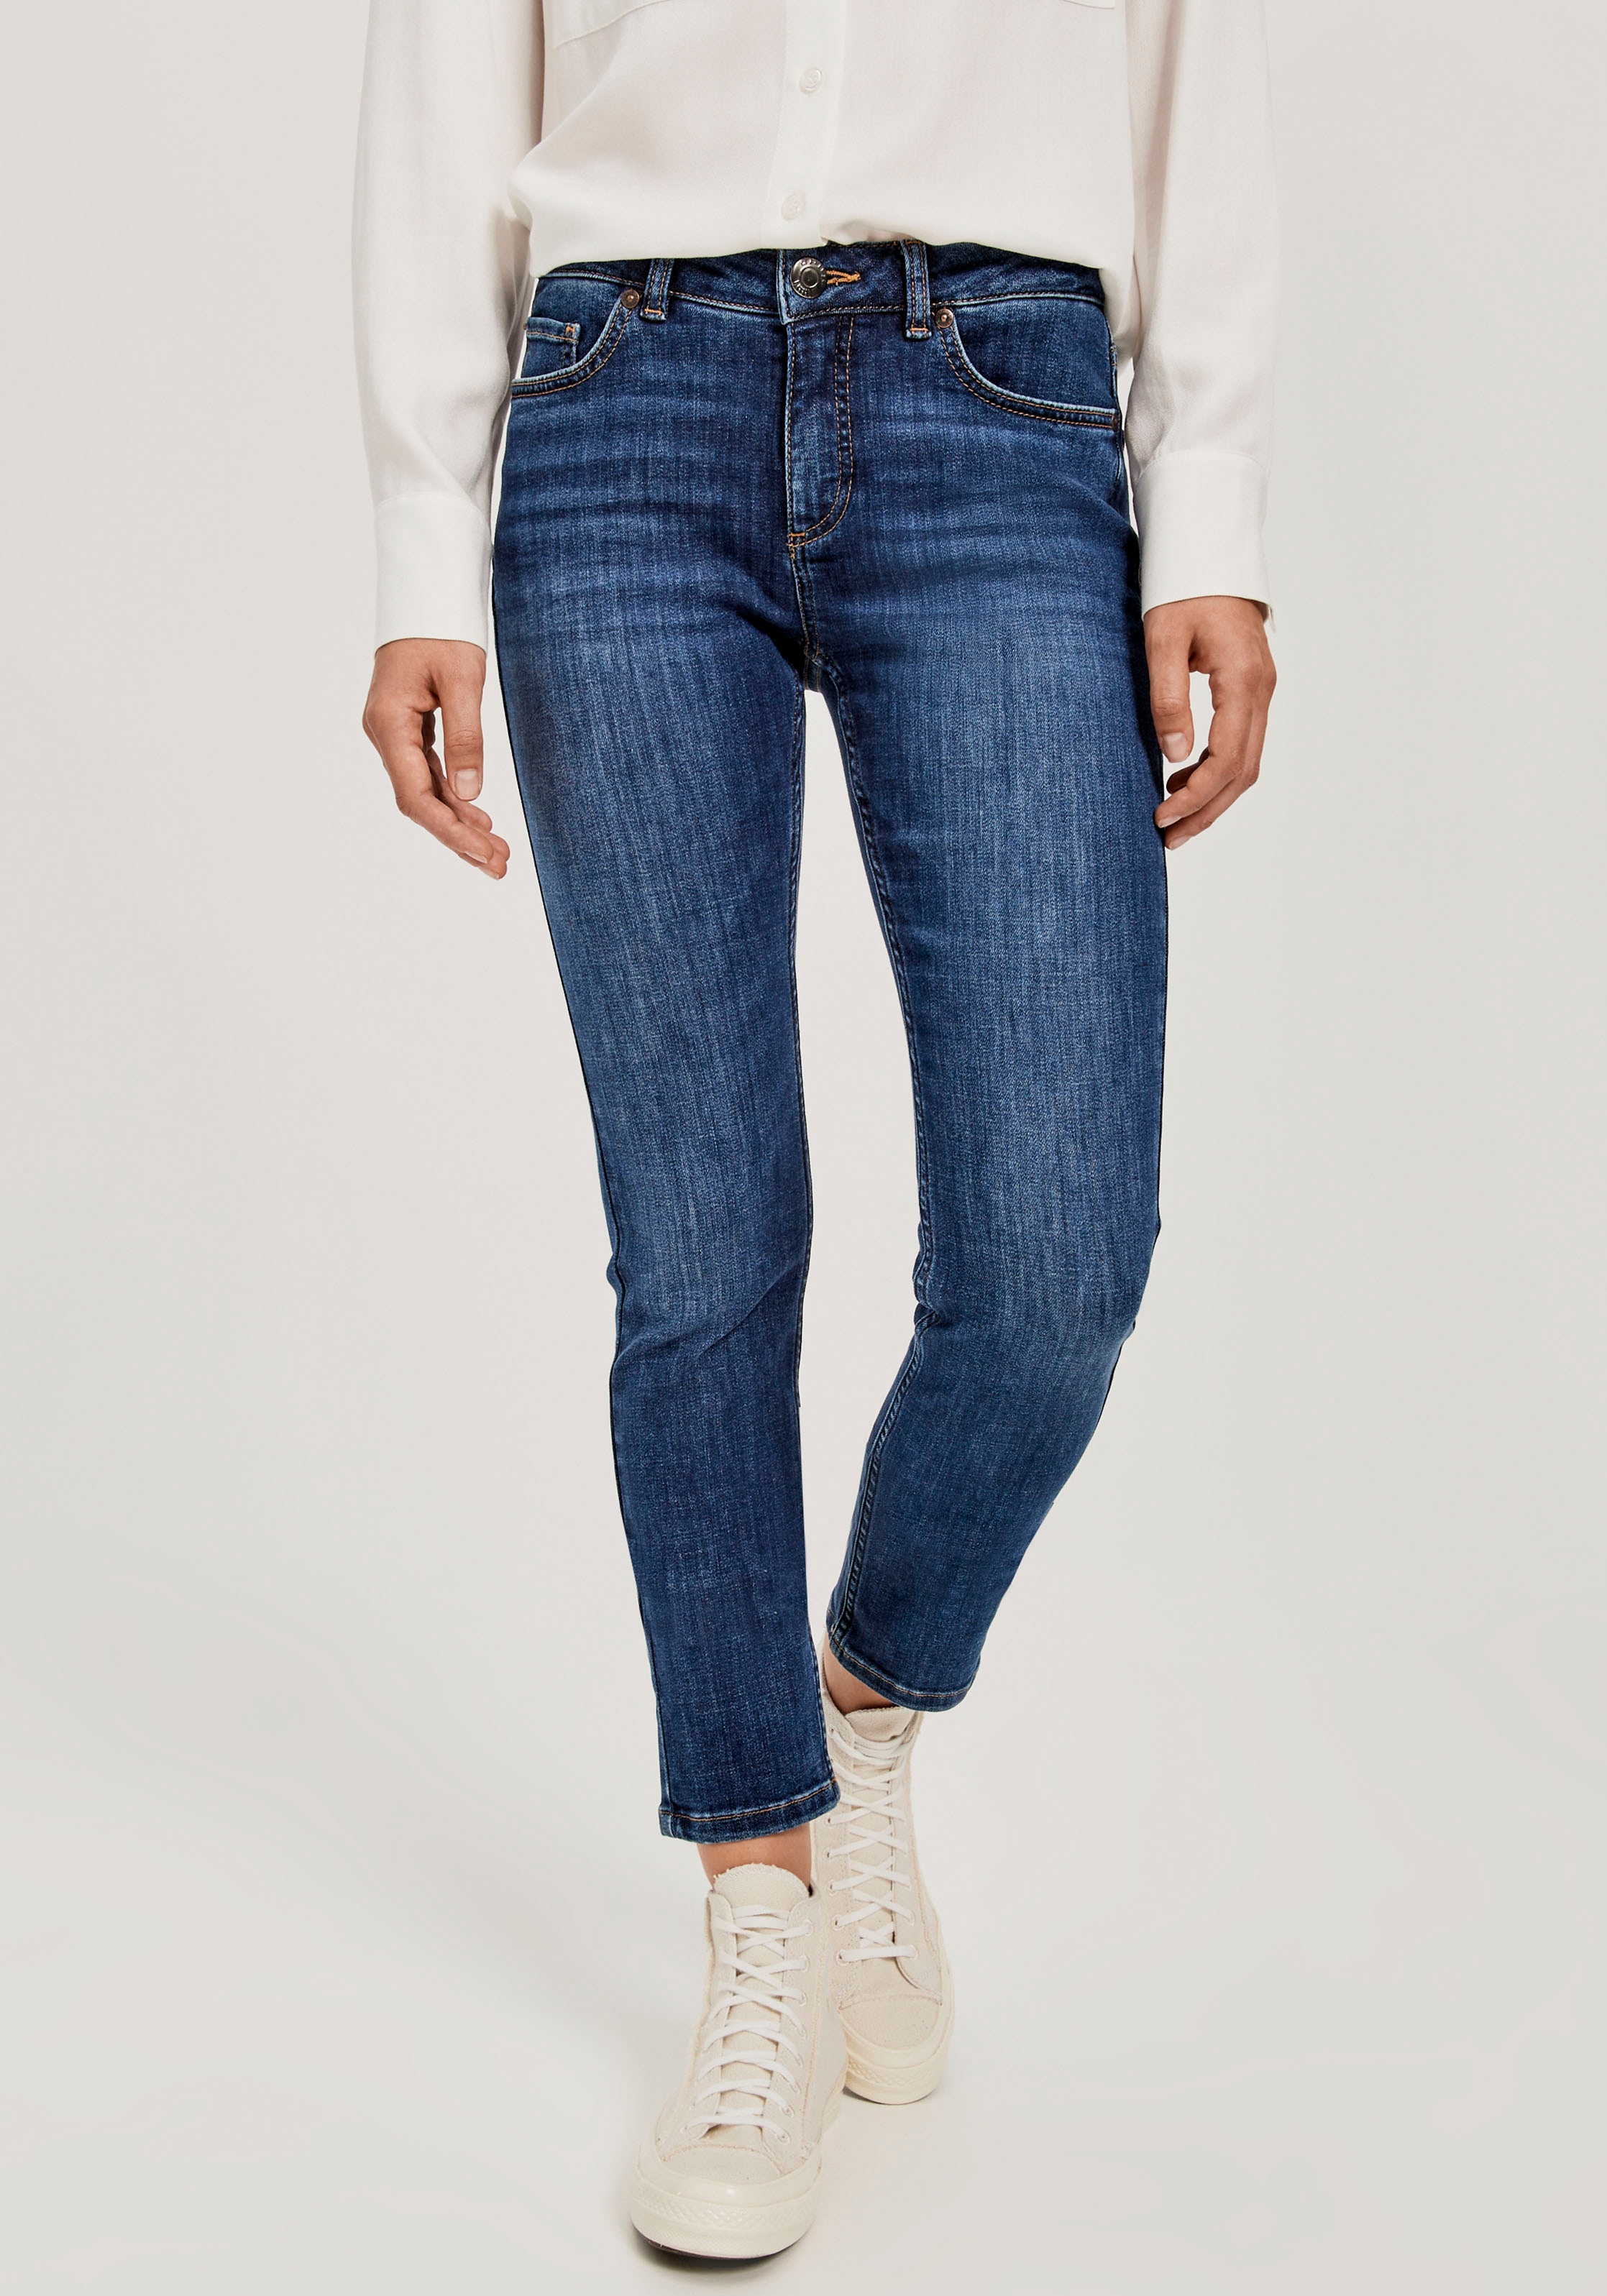 Skinny-fit-Jeans »Elma«, in 7/8-Länge